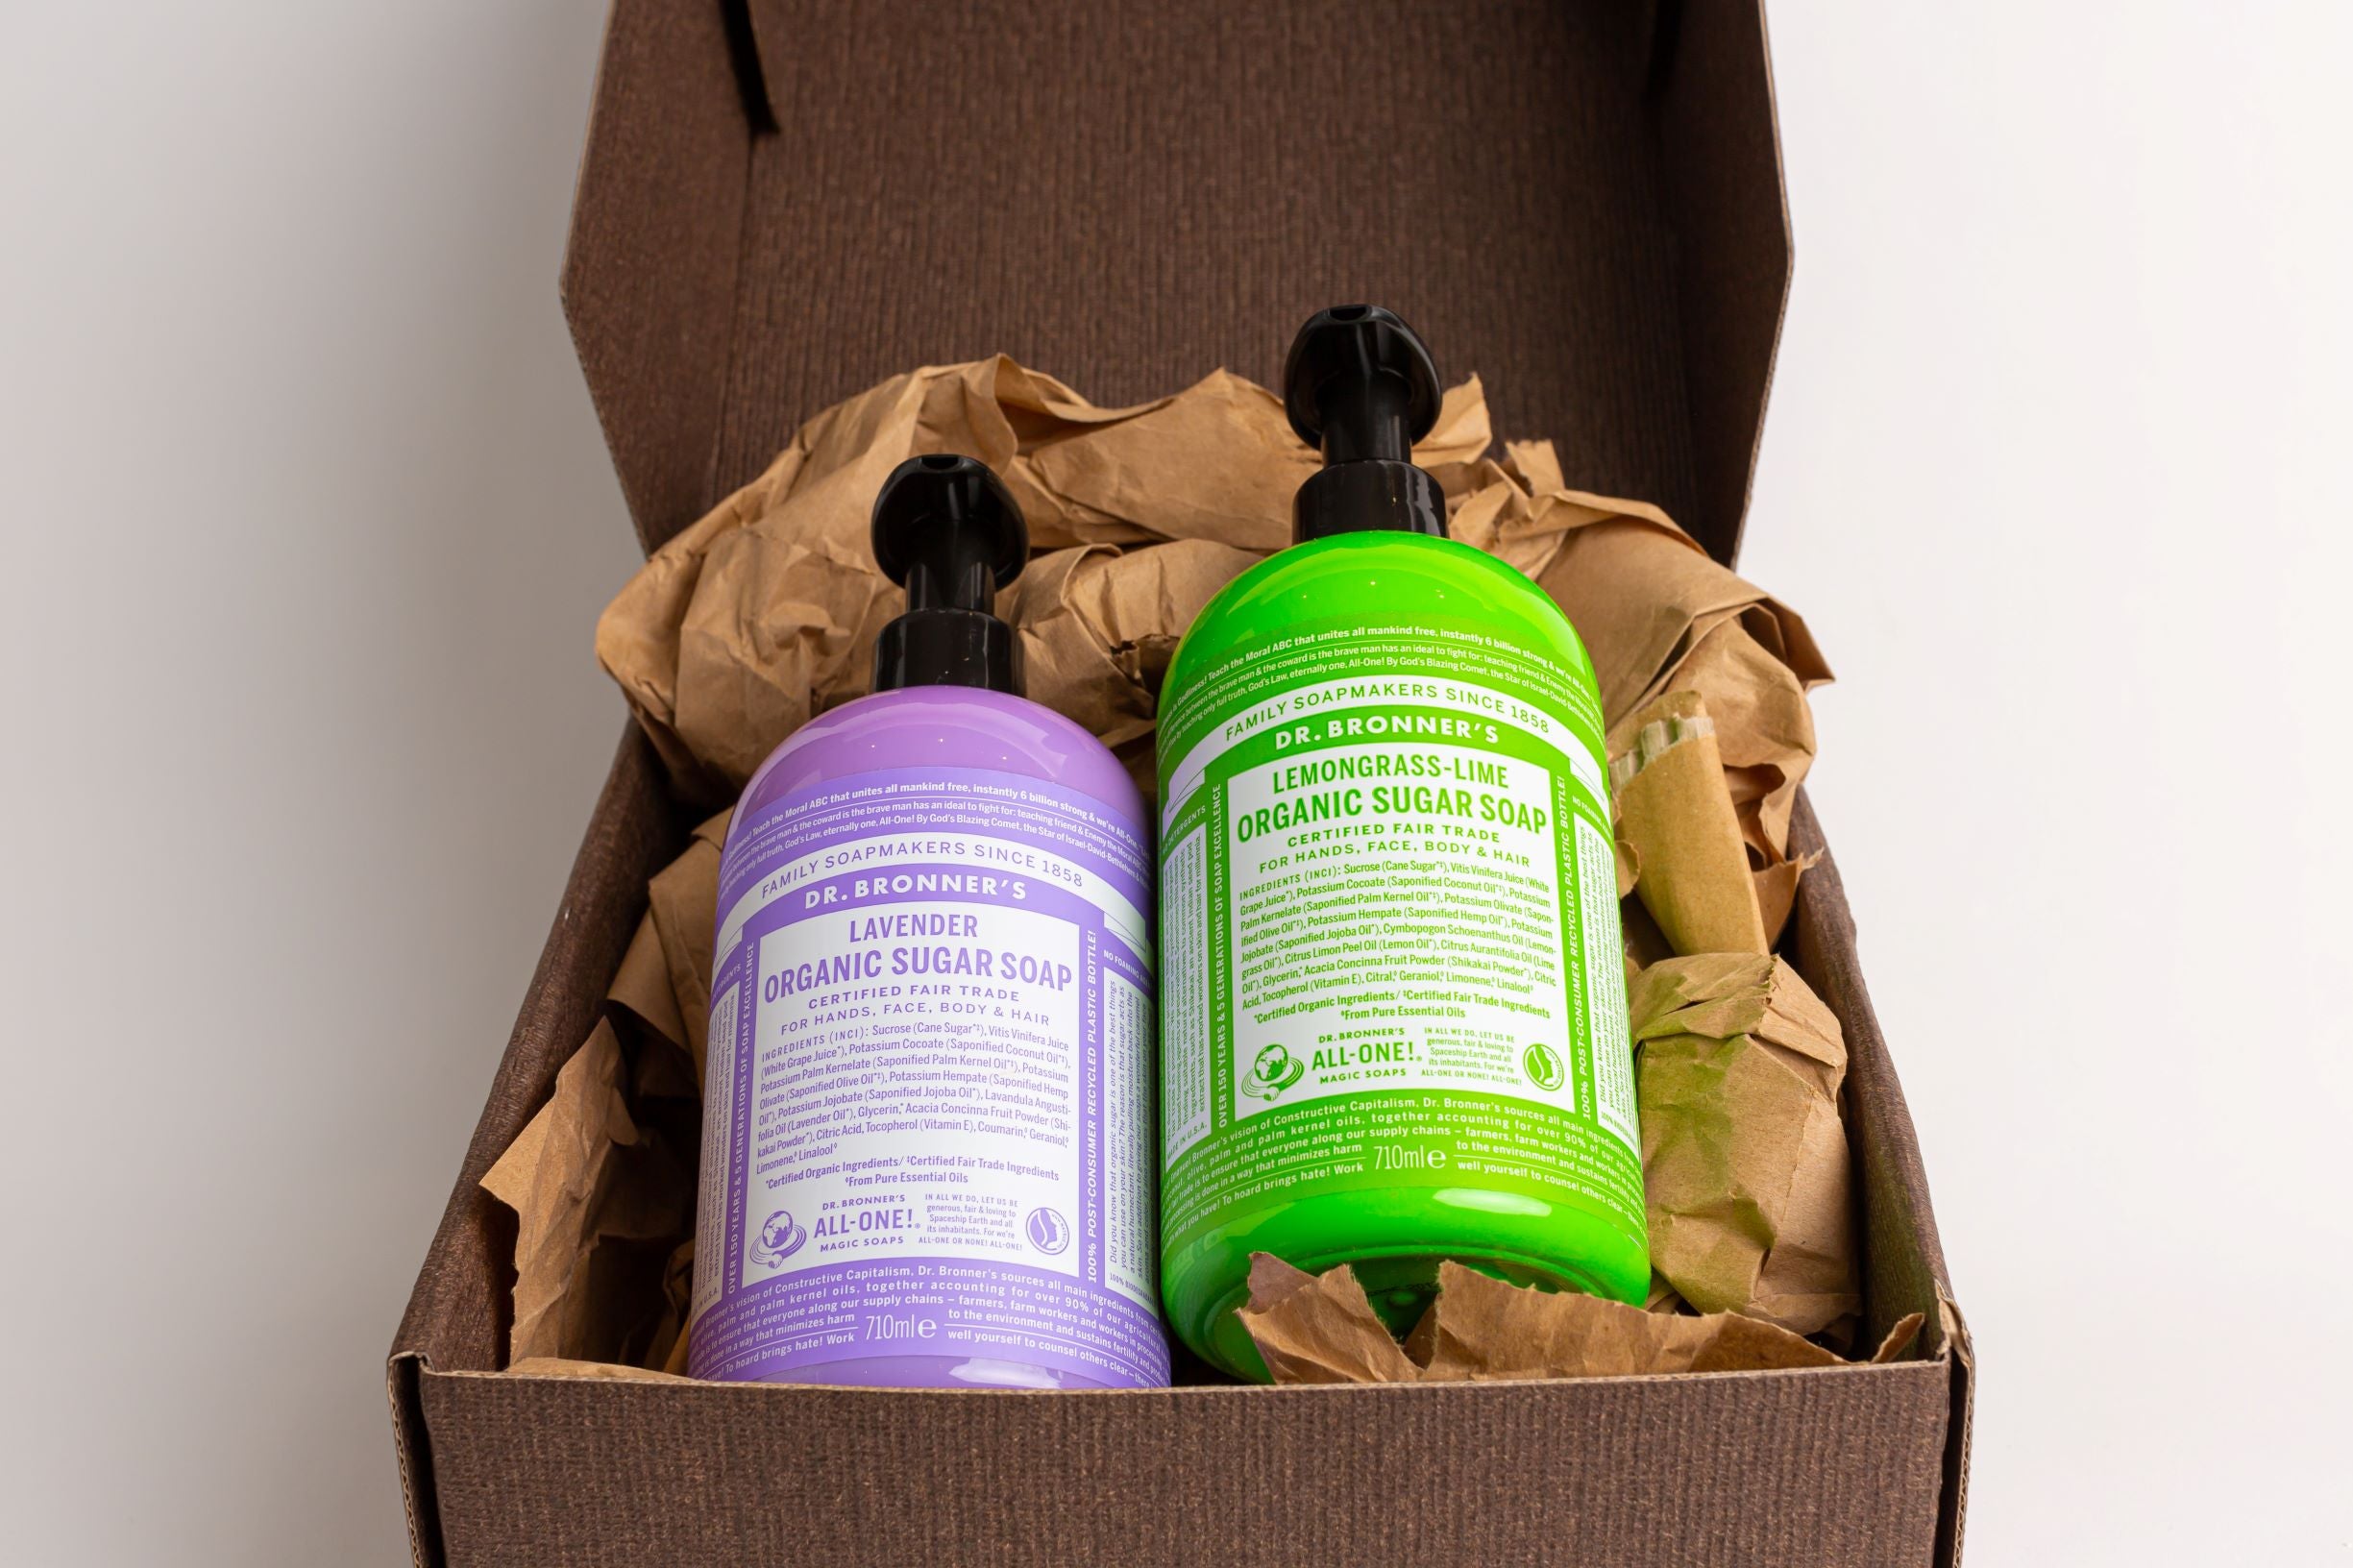 Dr Bronner's Organic Sugar Soap Gift Set 710ml (Lavender & Lemongrass Lime) + Free 60ml Soap